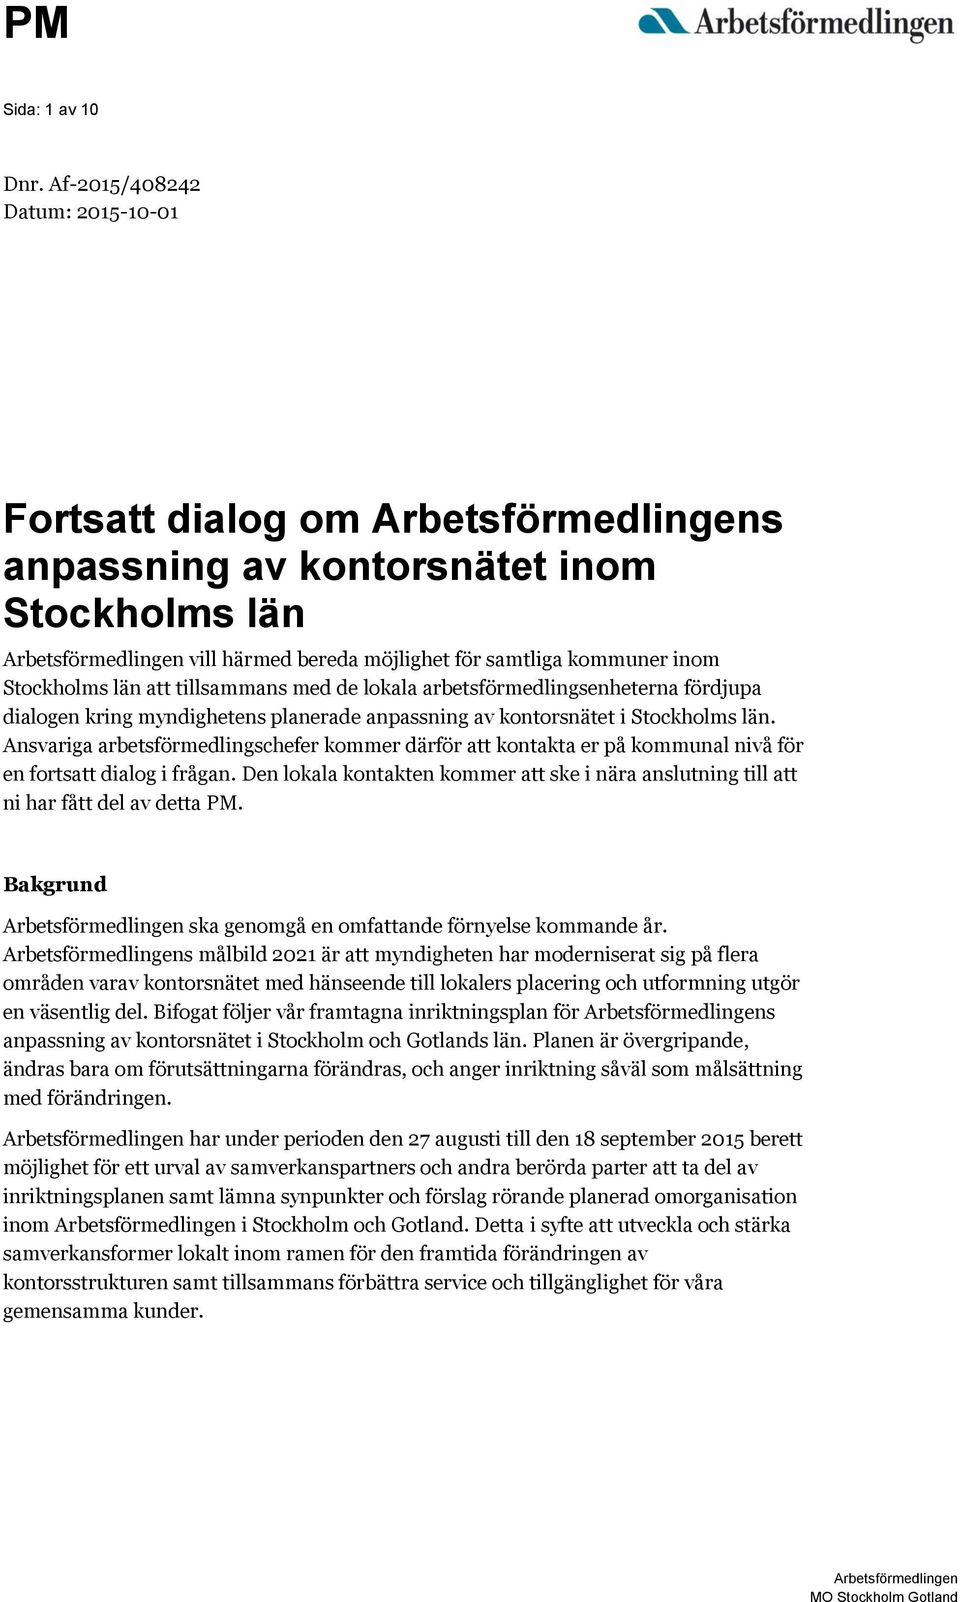 Stockholms län att tillsammans med de lokala arbetsförmedlingsenheterna fördjupa dialogen kring myndighetens planerade anpassning av kontorsnätet i Stockholms län.